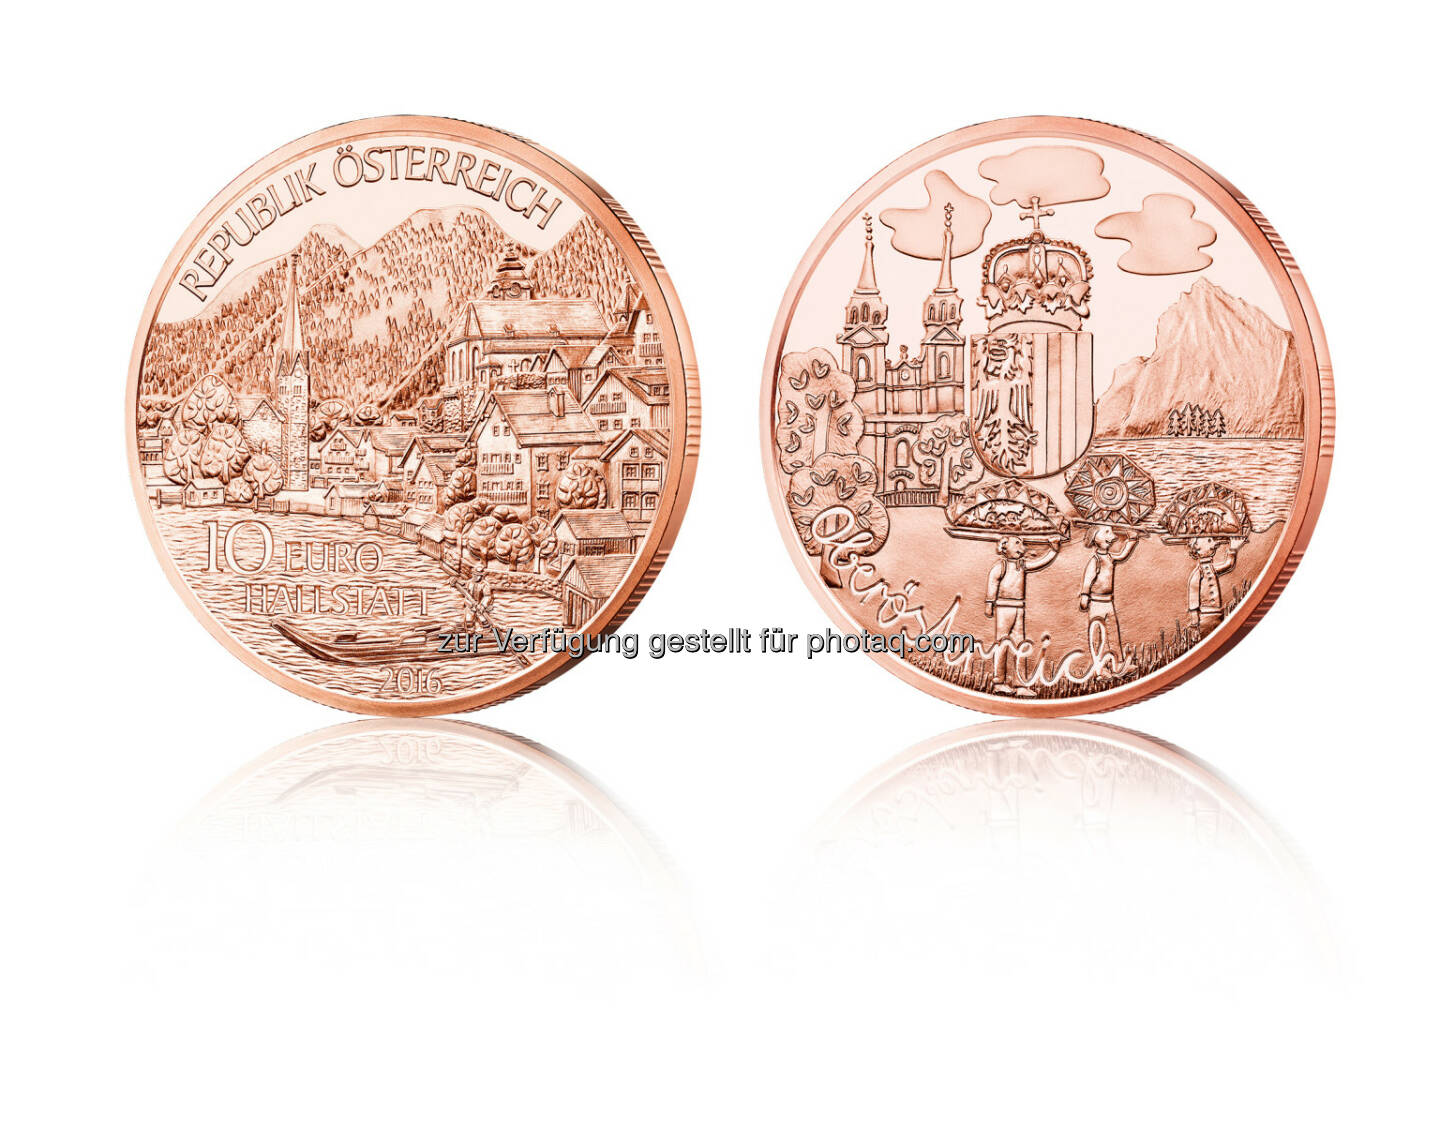 Oberösterreich Münze in Kupfer : Die erste Münze für Oberösterreich mit Eigenheiten und Sehenswürdigkeiten : Fotocredit: Münze Österrreich AG/Stelzhammer